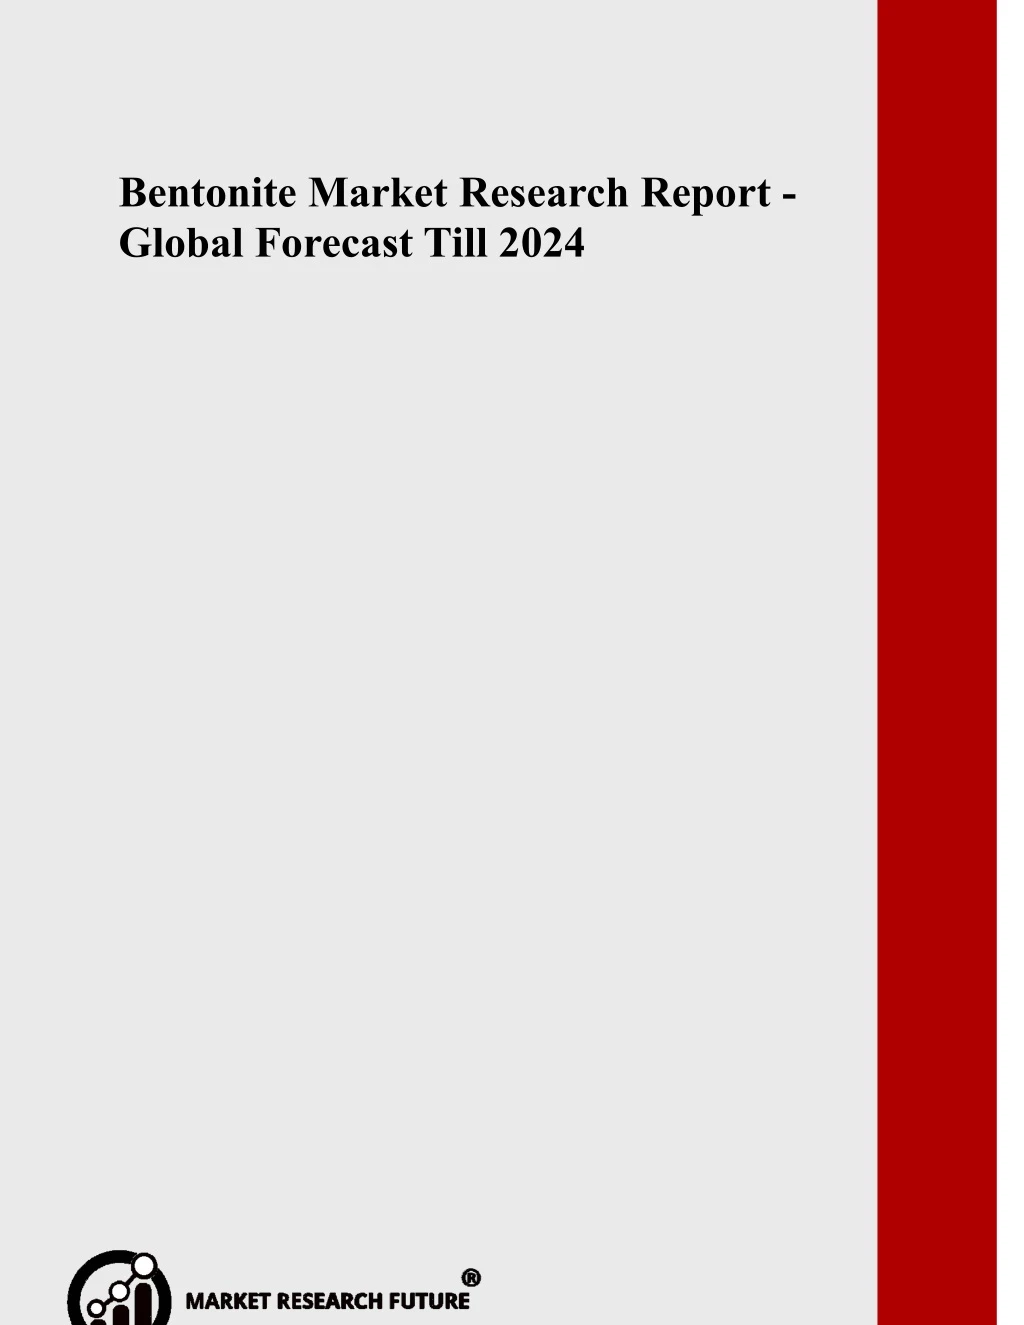 bentonite market research report global forecast